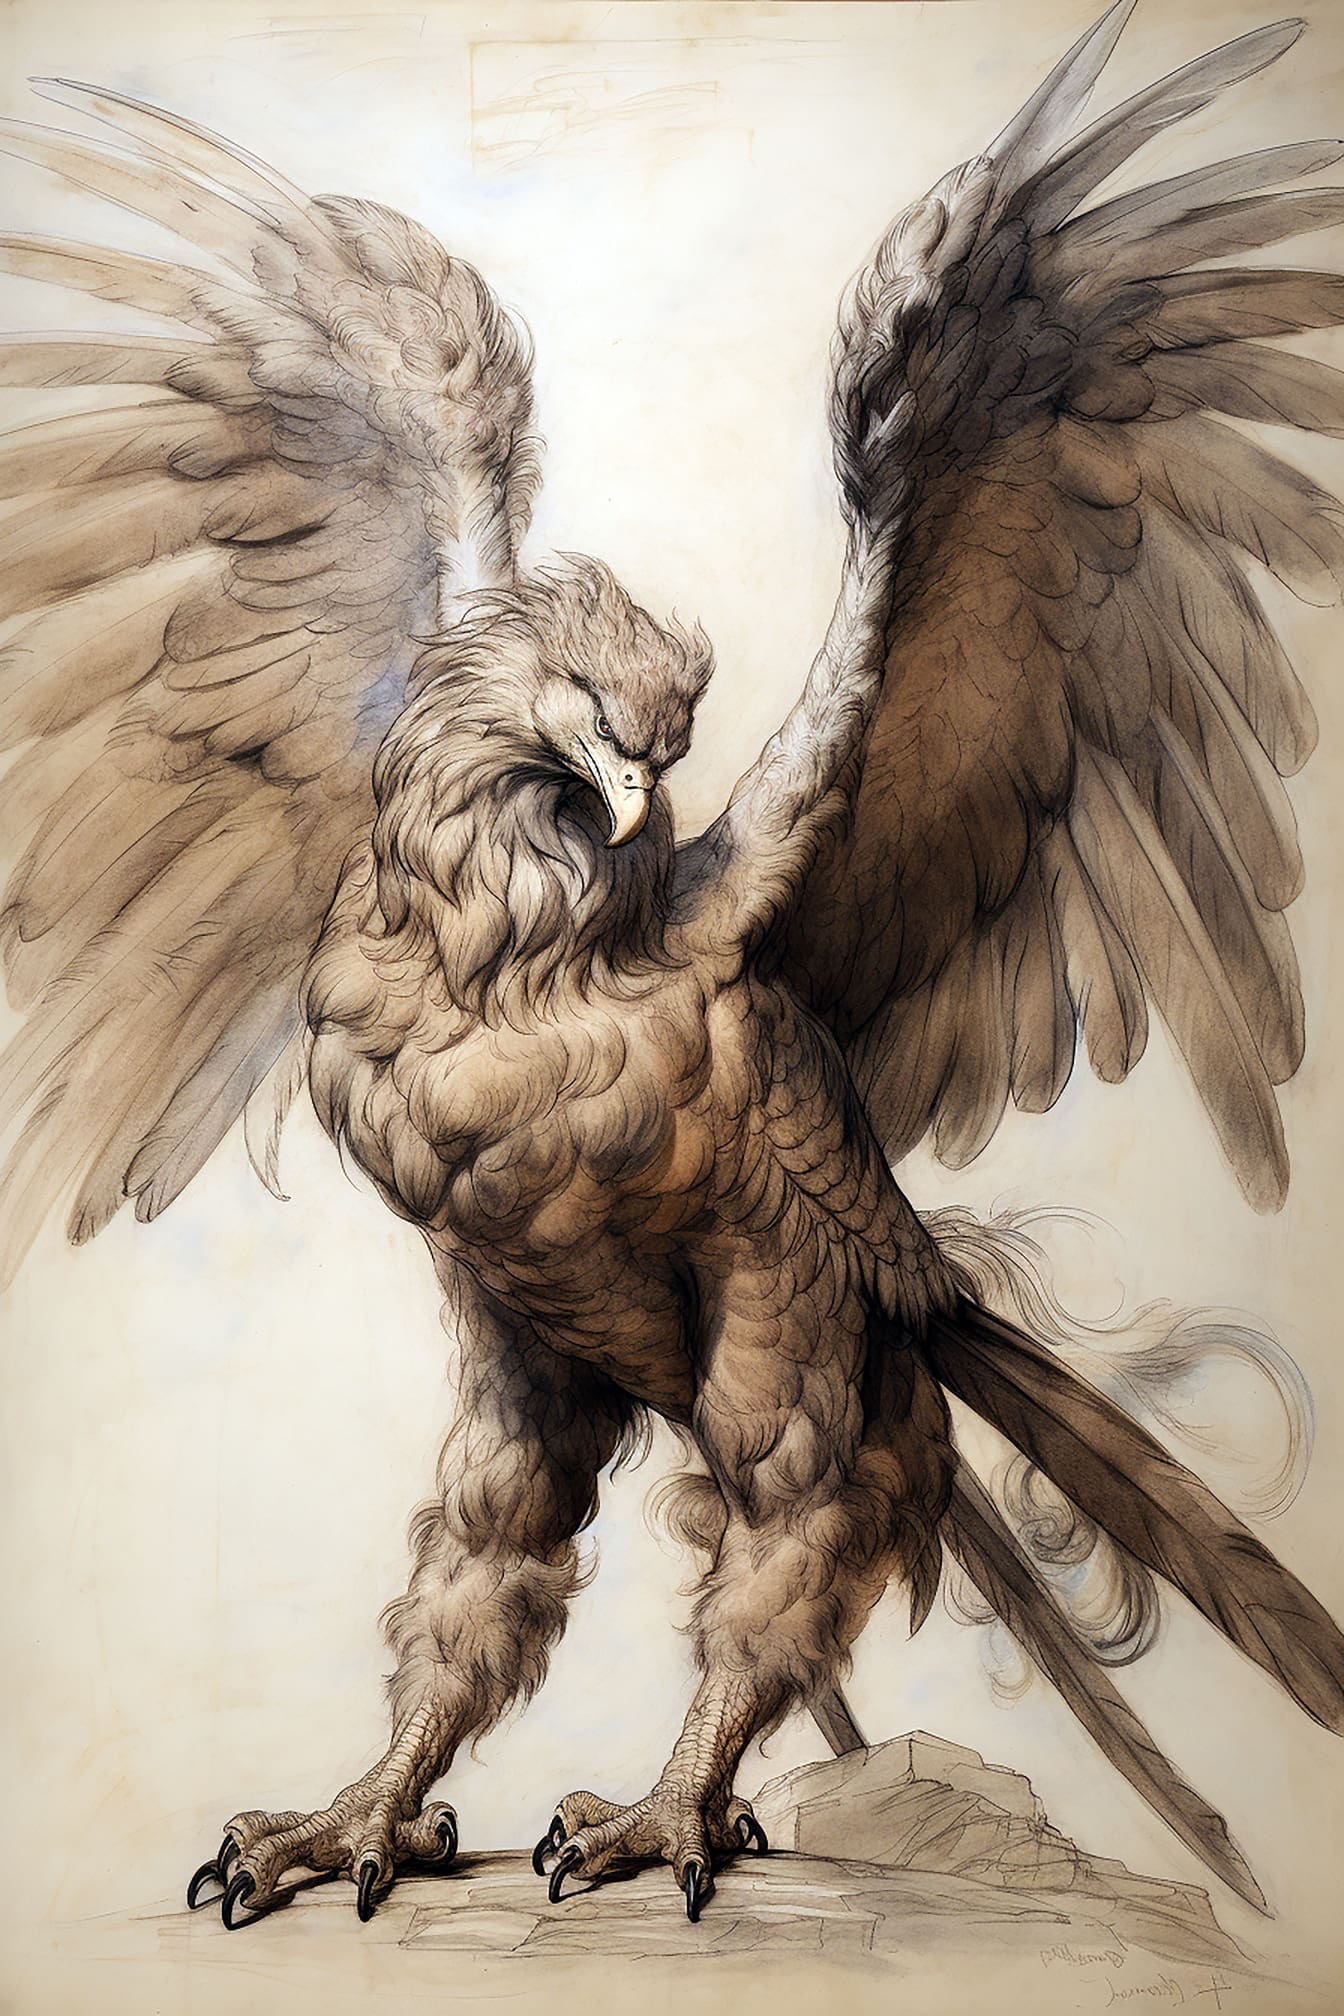 Prekrasna umjetnička ilustracija orla s velikim krilima